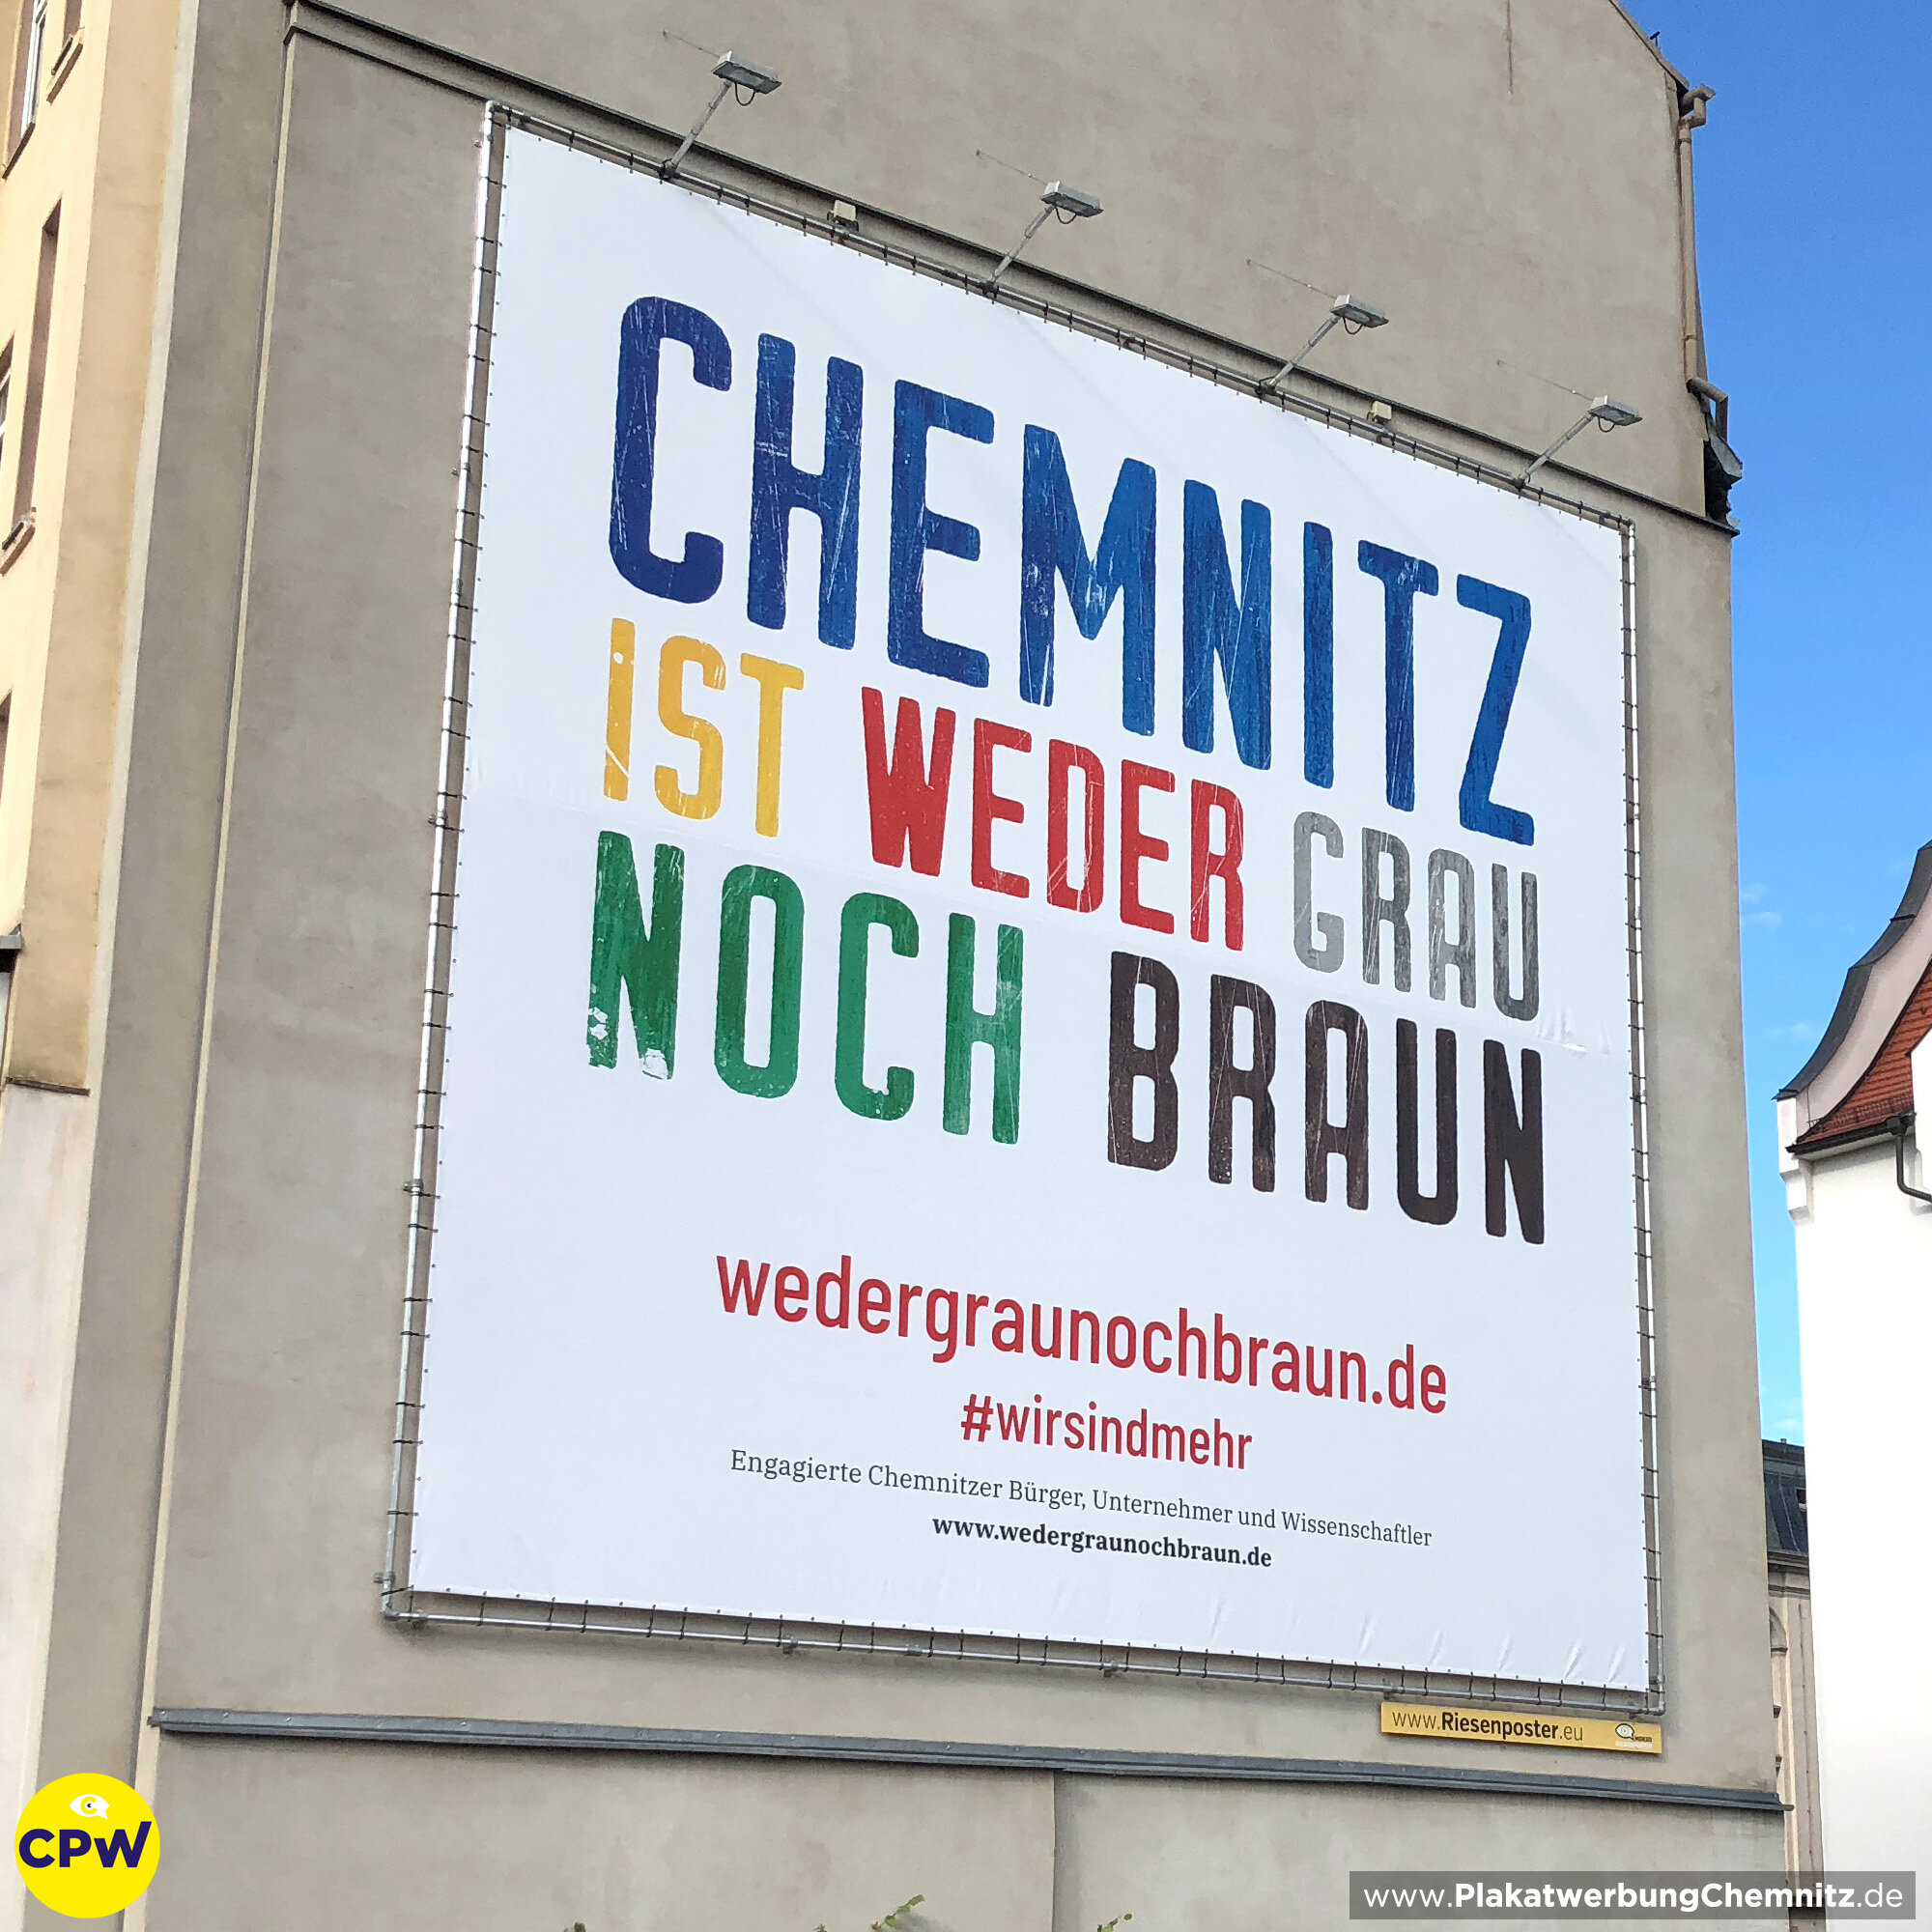 CPW Plakatwerbung Chemnitz - Werbefläche HARTI 81m² - Chemnitz ist weder grau noch braun